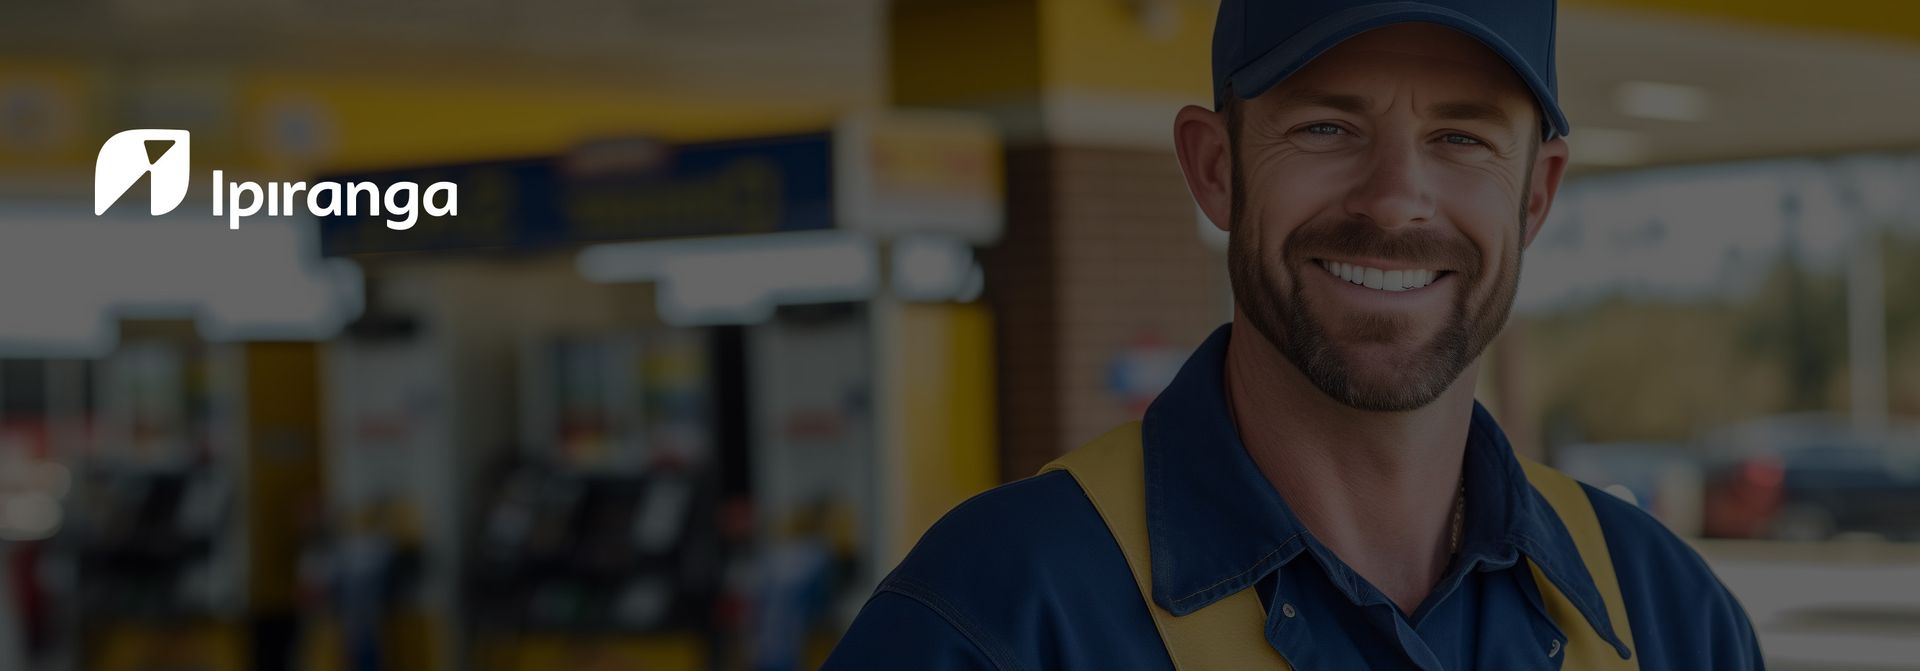 um homem de uniforme azul e amarelo está sorrindo na frente de um posto de gasolina